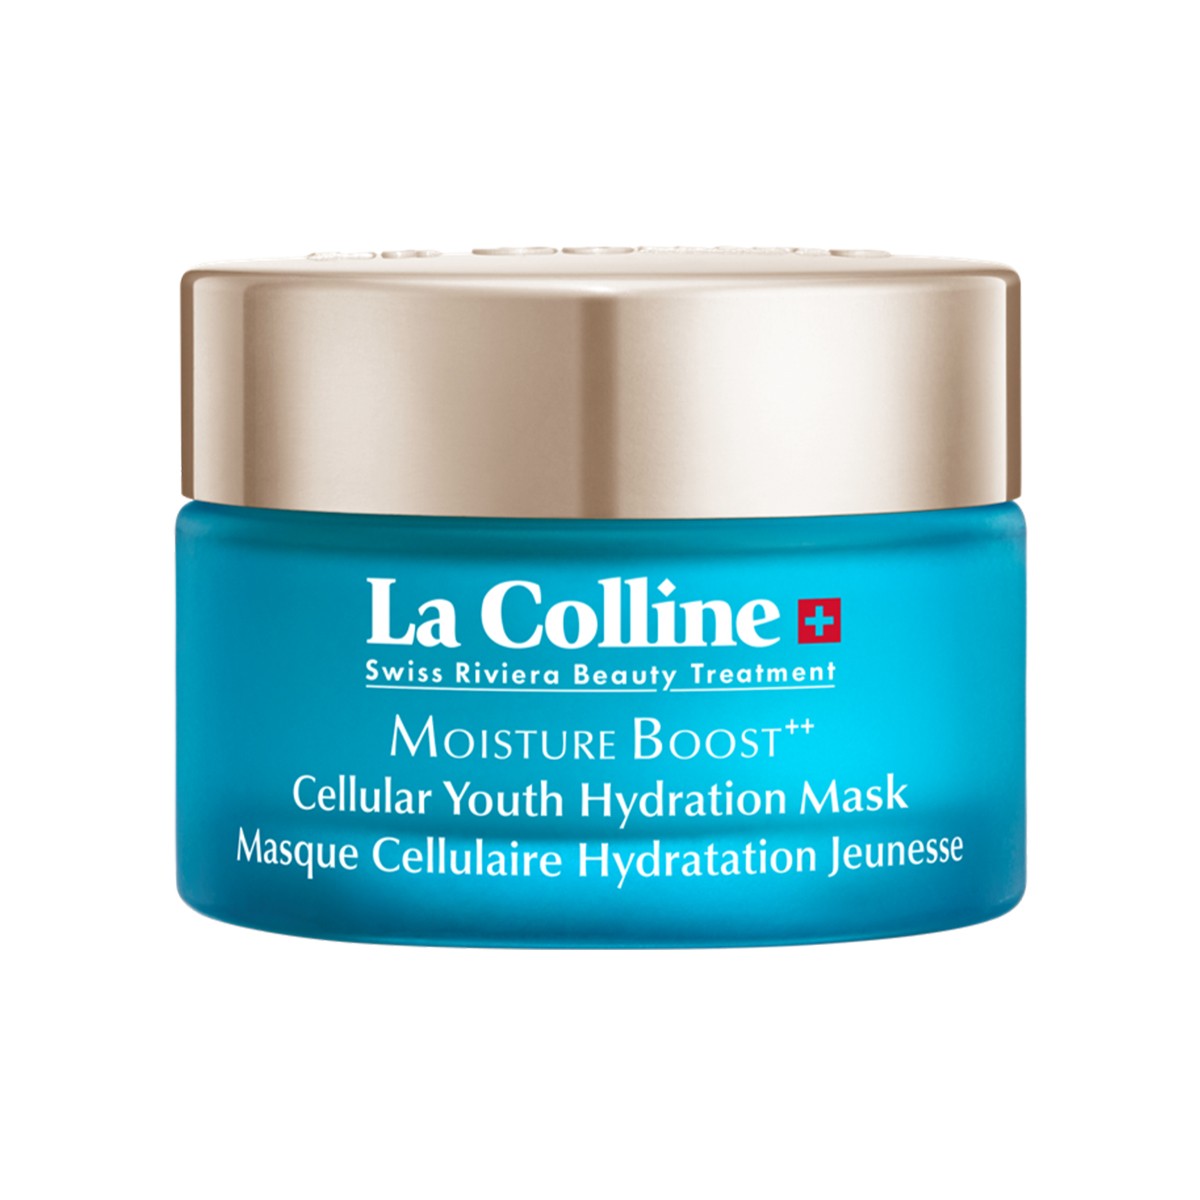 LA COLLINE Cellular Youth Hydration Mask 30 ML Gençleştirici ve Nemlendirici Maske image